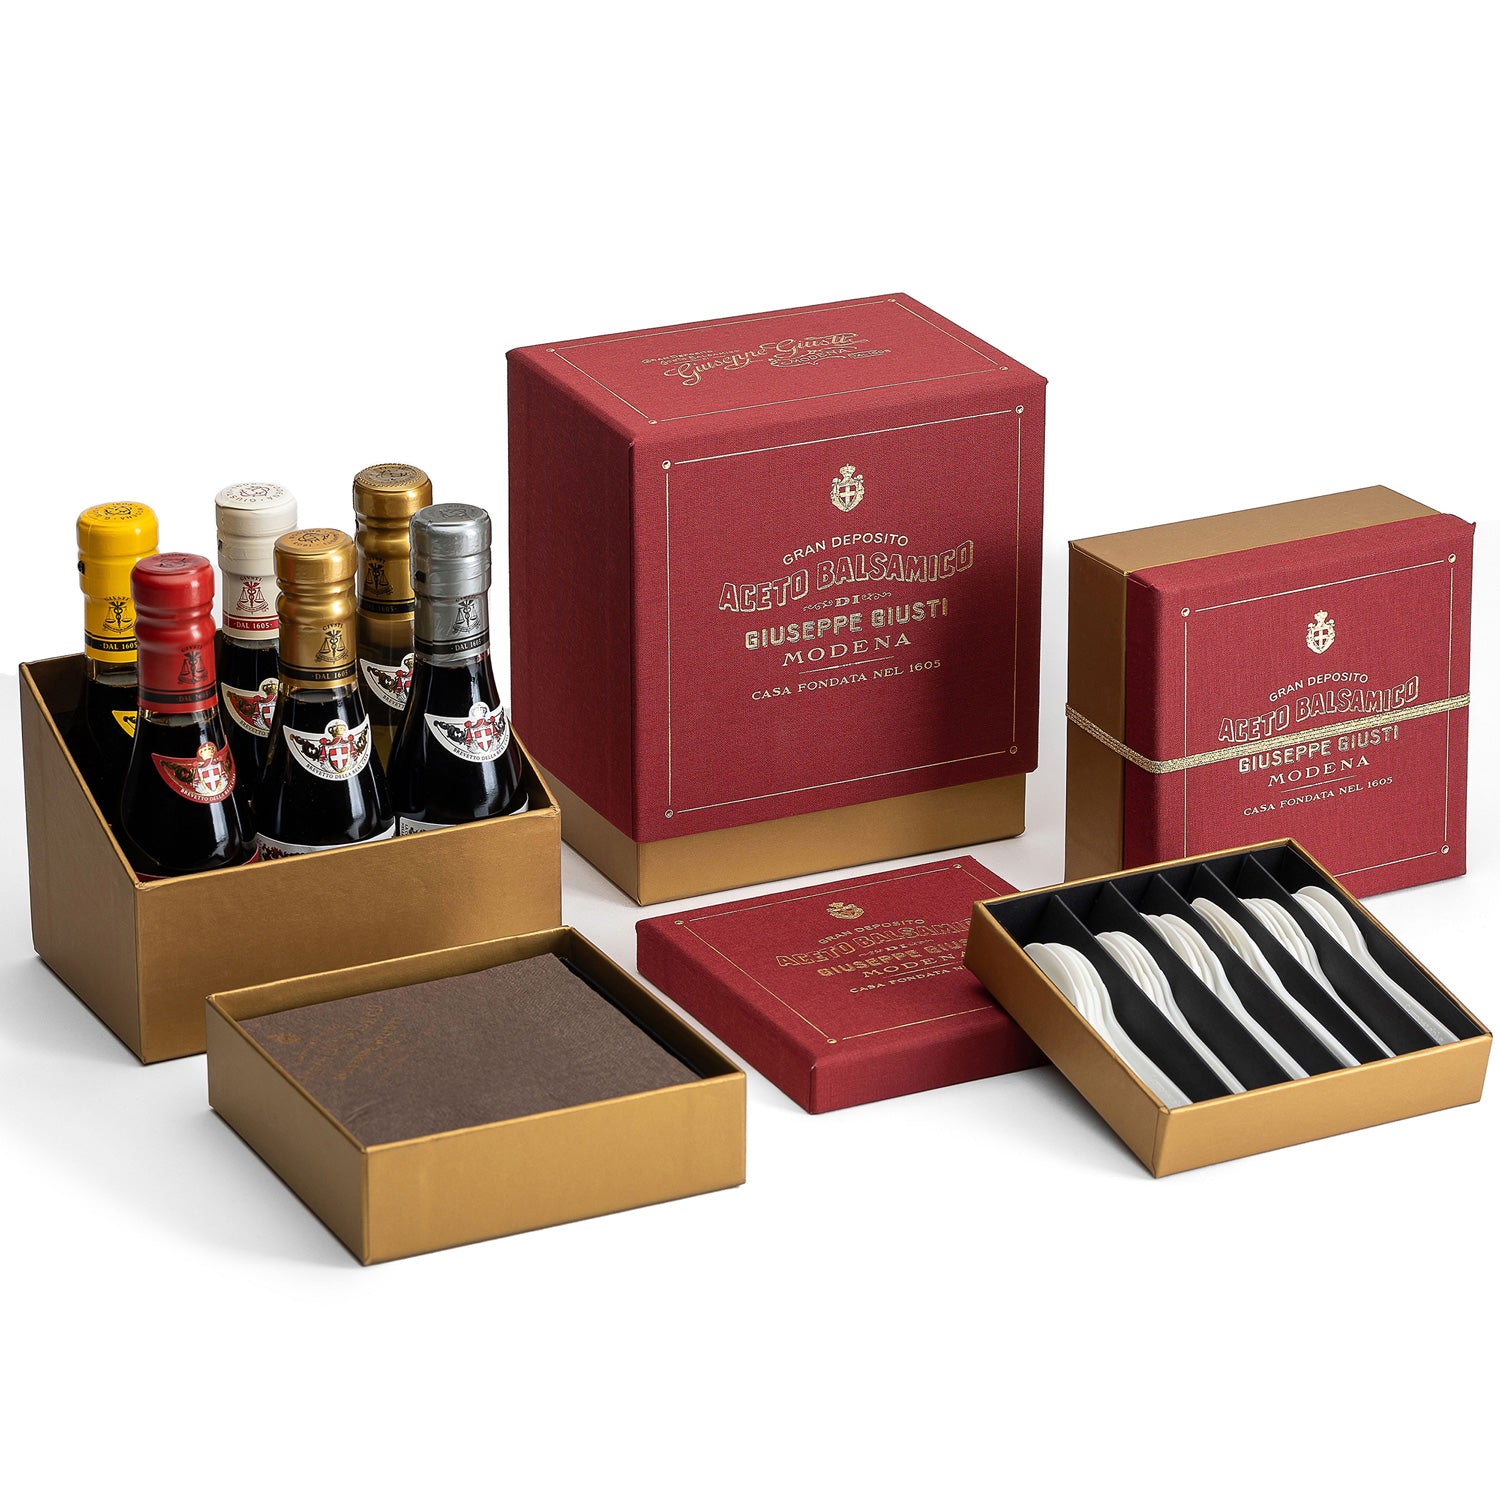 Balsamic Vinegar Gift Set - 6 Bottles and Gift Box - by Giusti